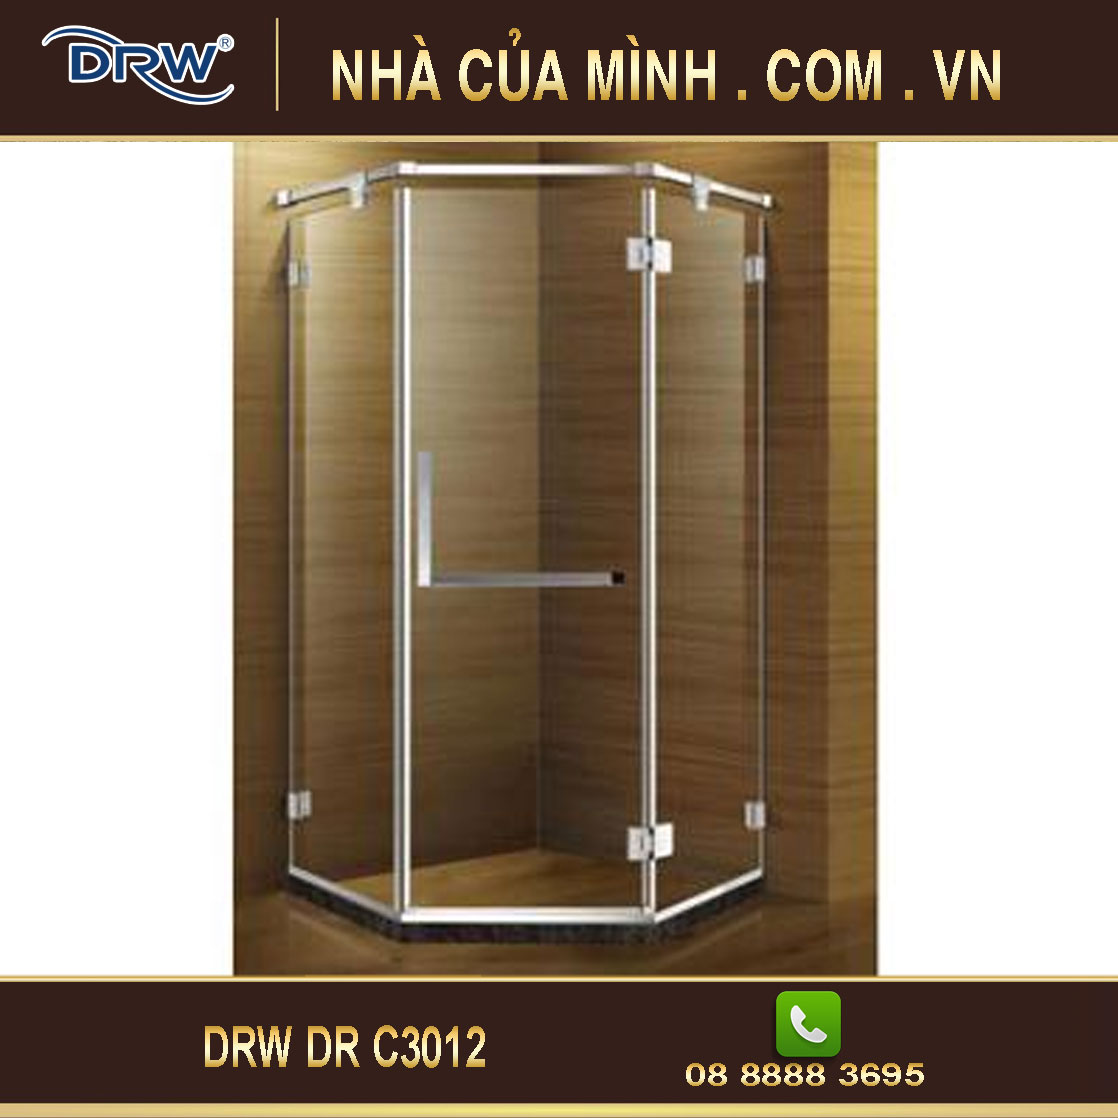 Vách kính phòng tắm DRW DR C3012 cao cấp